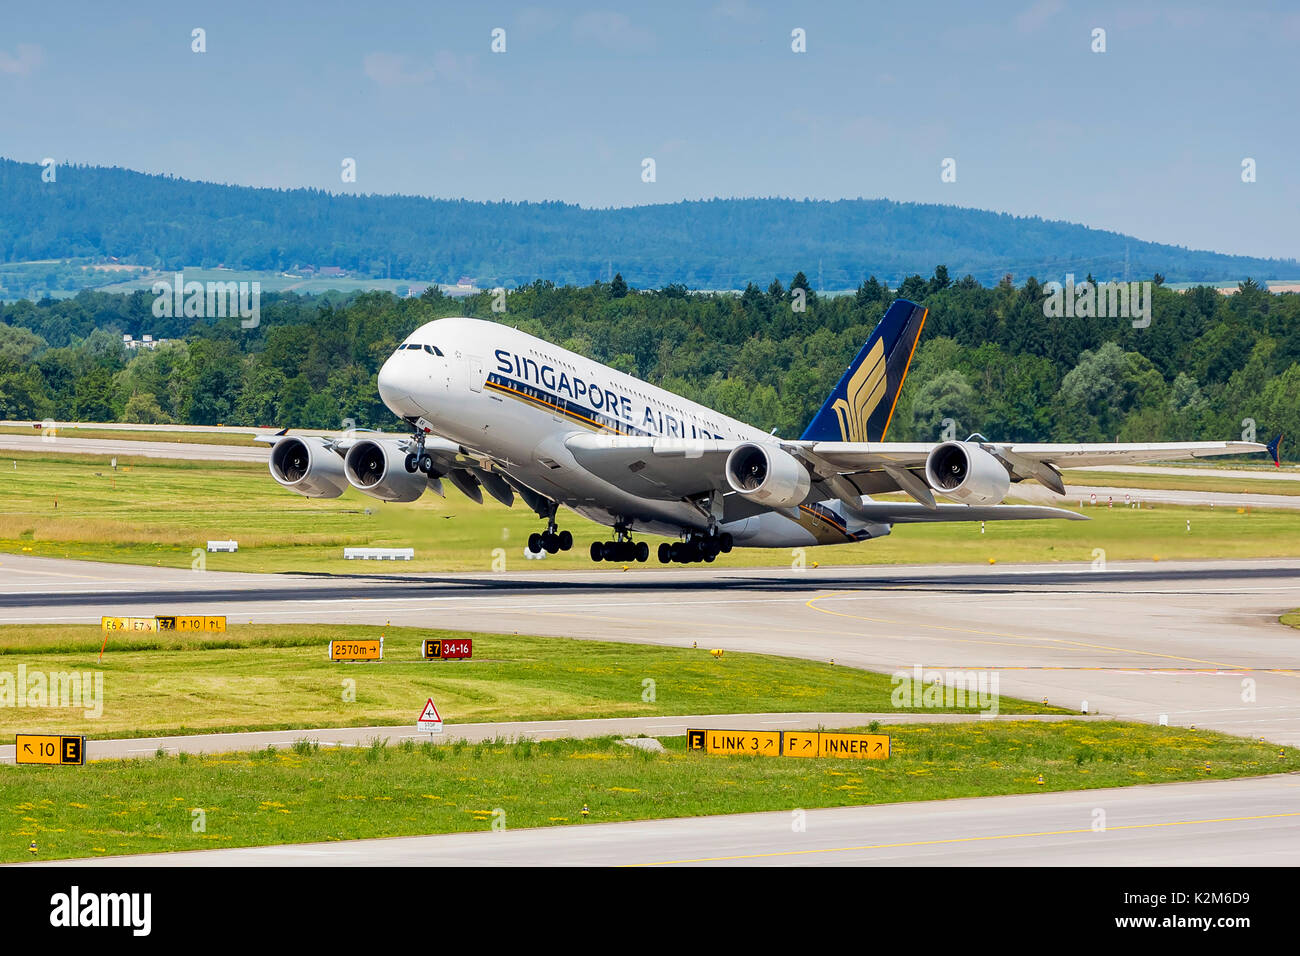 El aeropuerto de Zurich, ZRH, empezando avión Airbus A380 de Singapore Airlines, el registro de las aeronaves 9V-SKR. Foto de stock